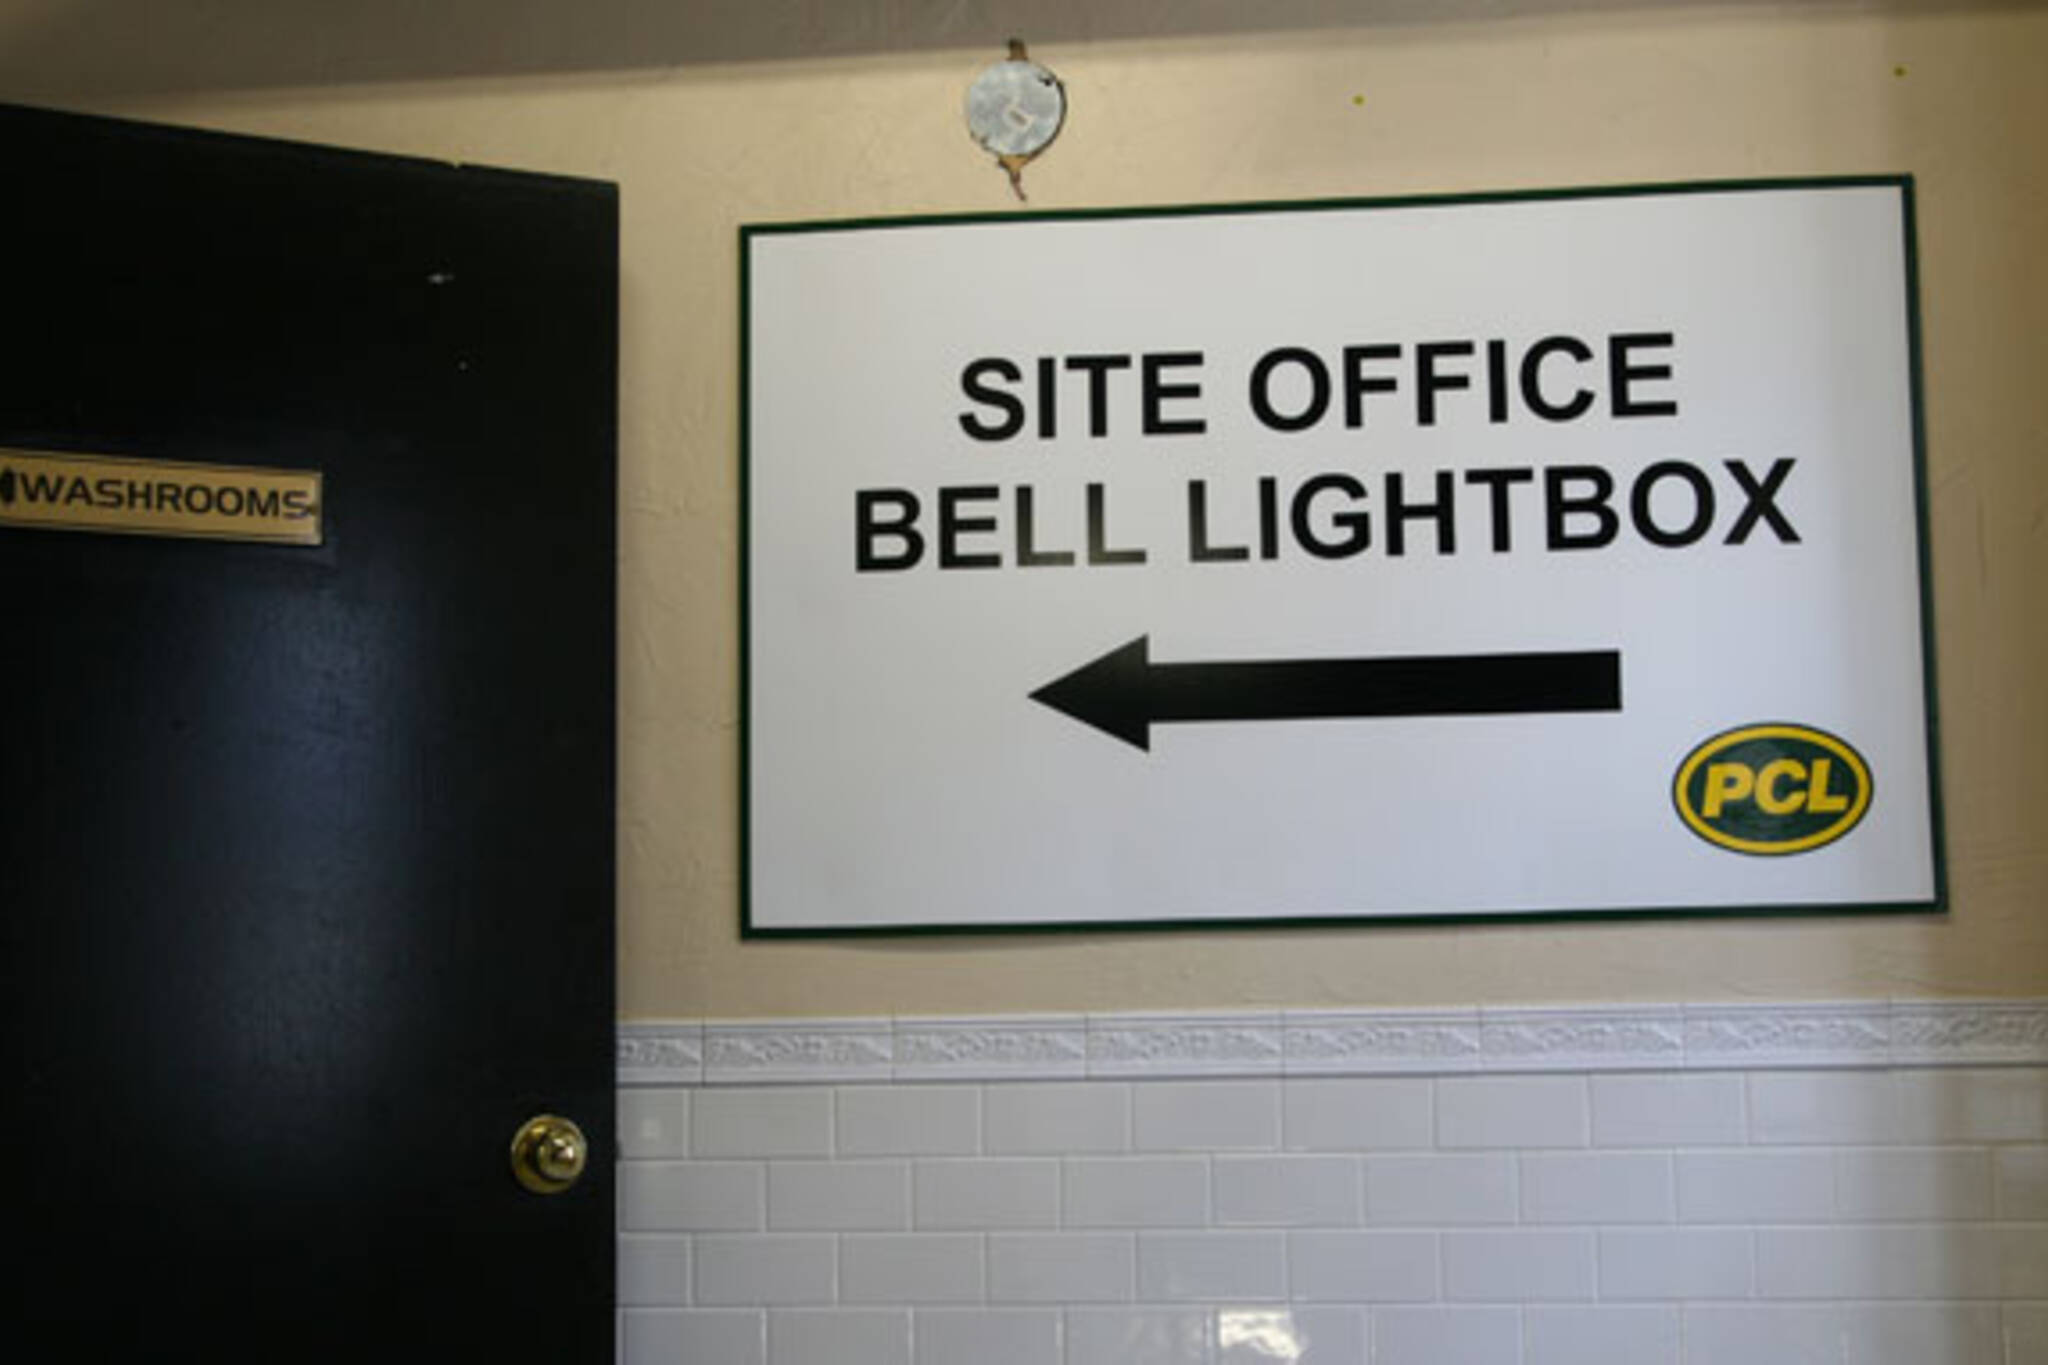 Bell Lightbox